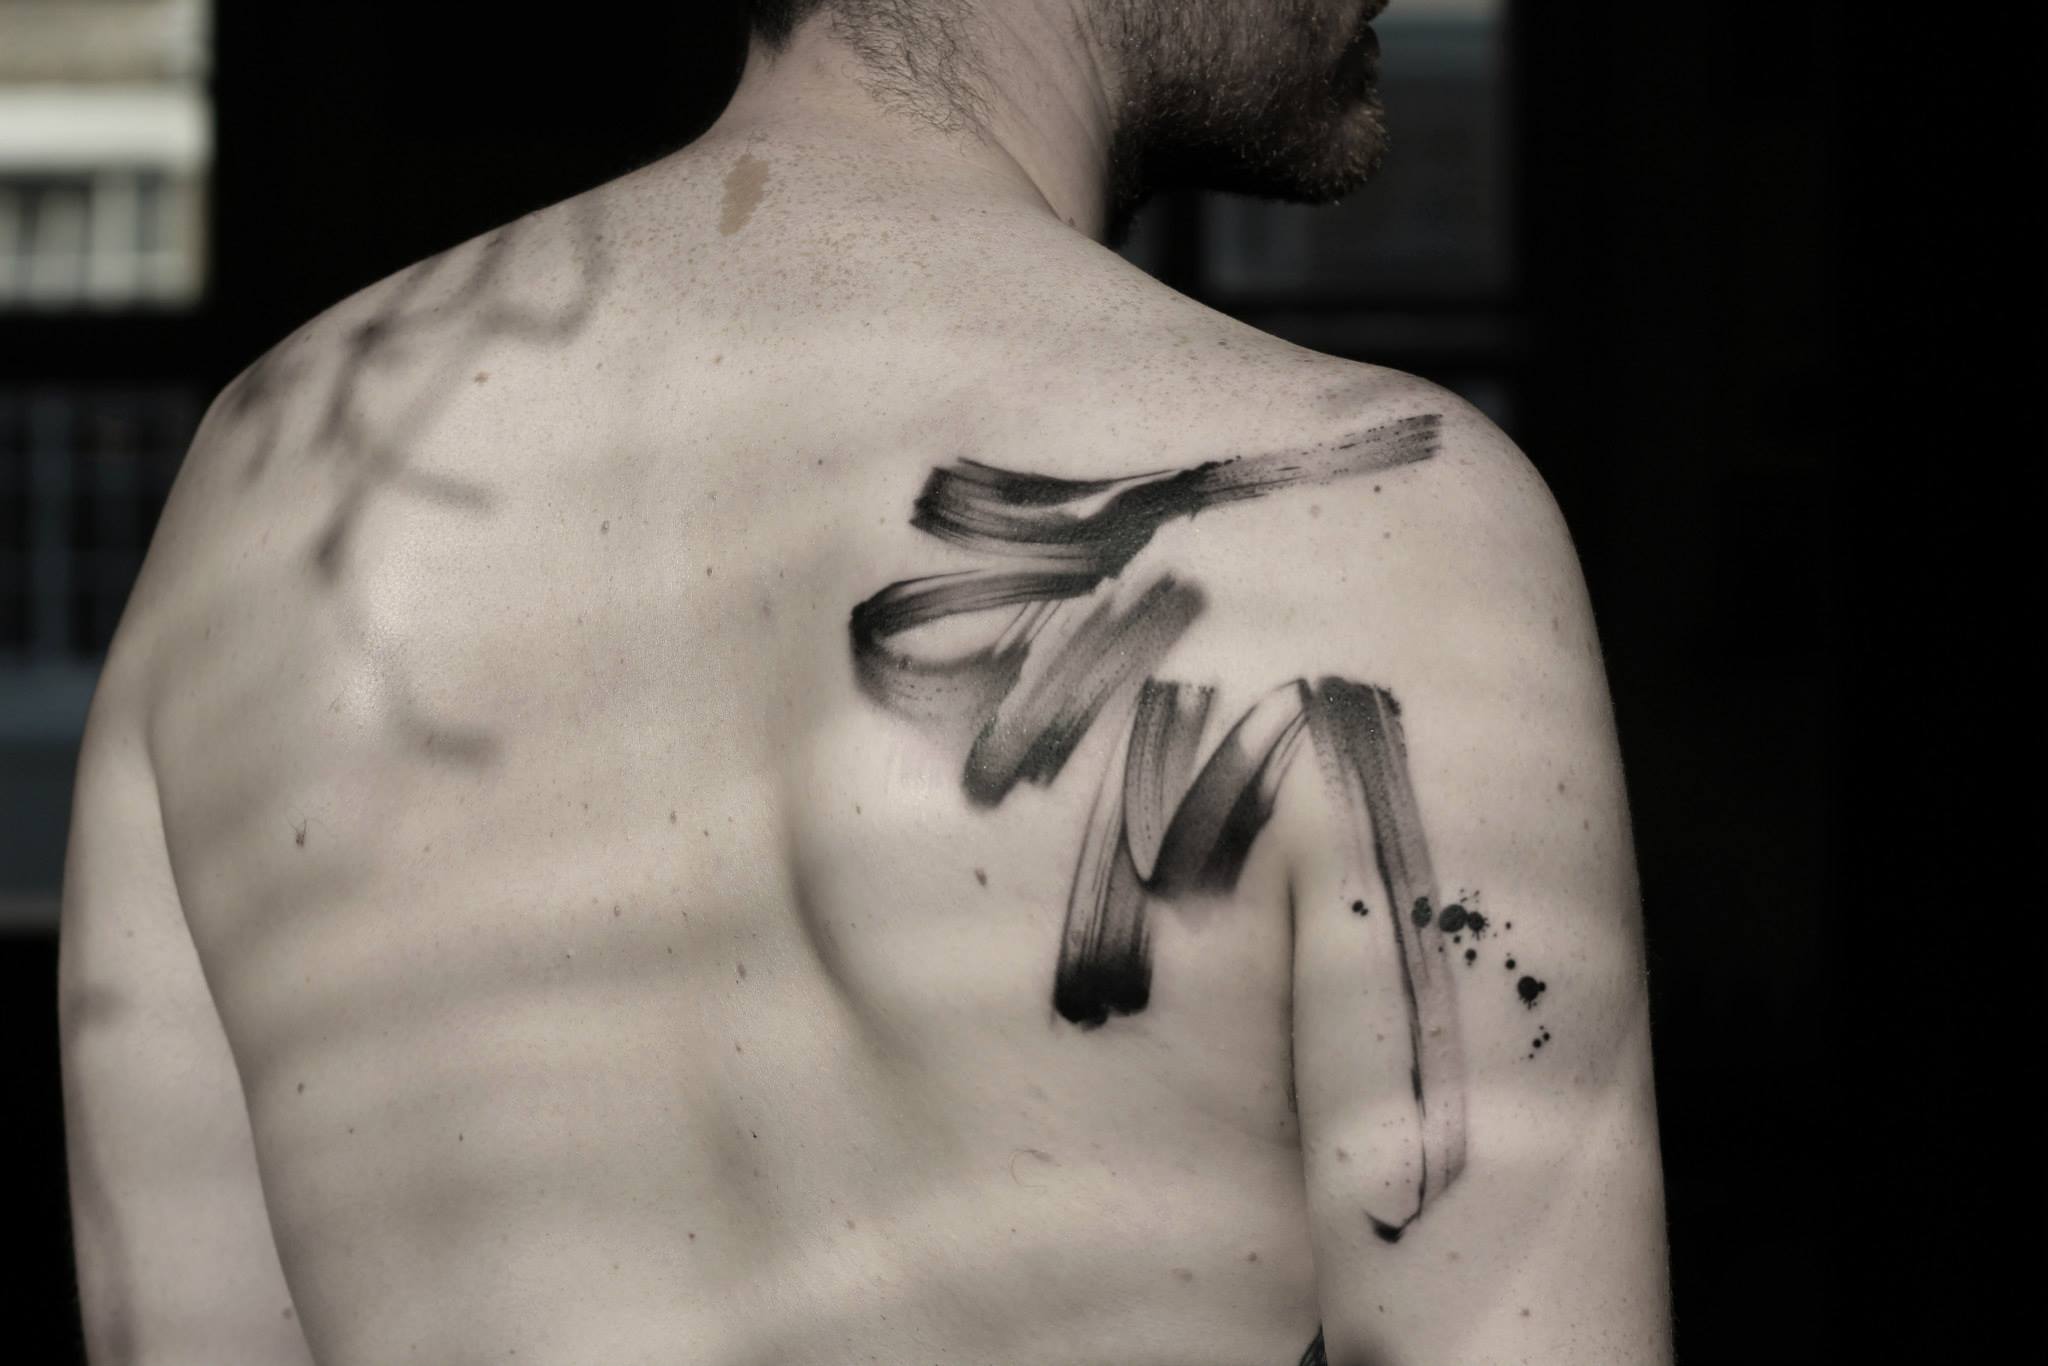 Lee-Stewart-tattoo-artist-the-vandallist-3.jpg